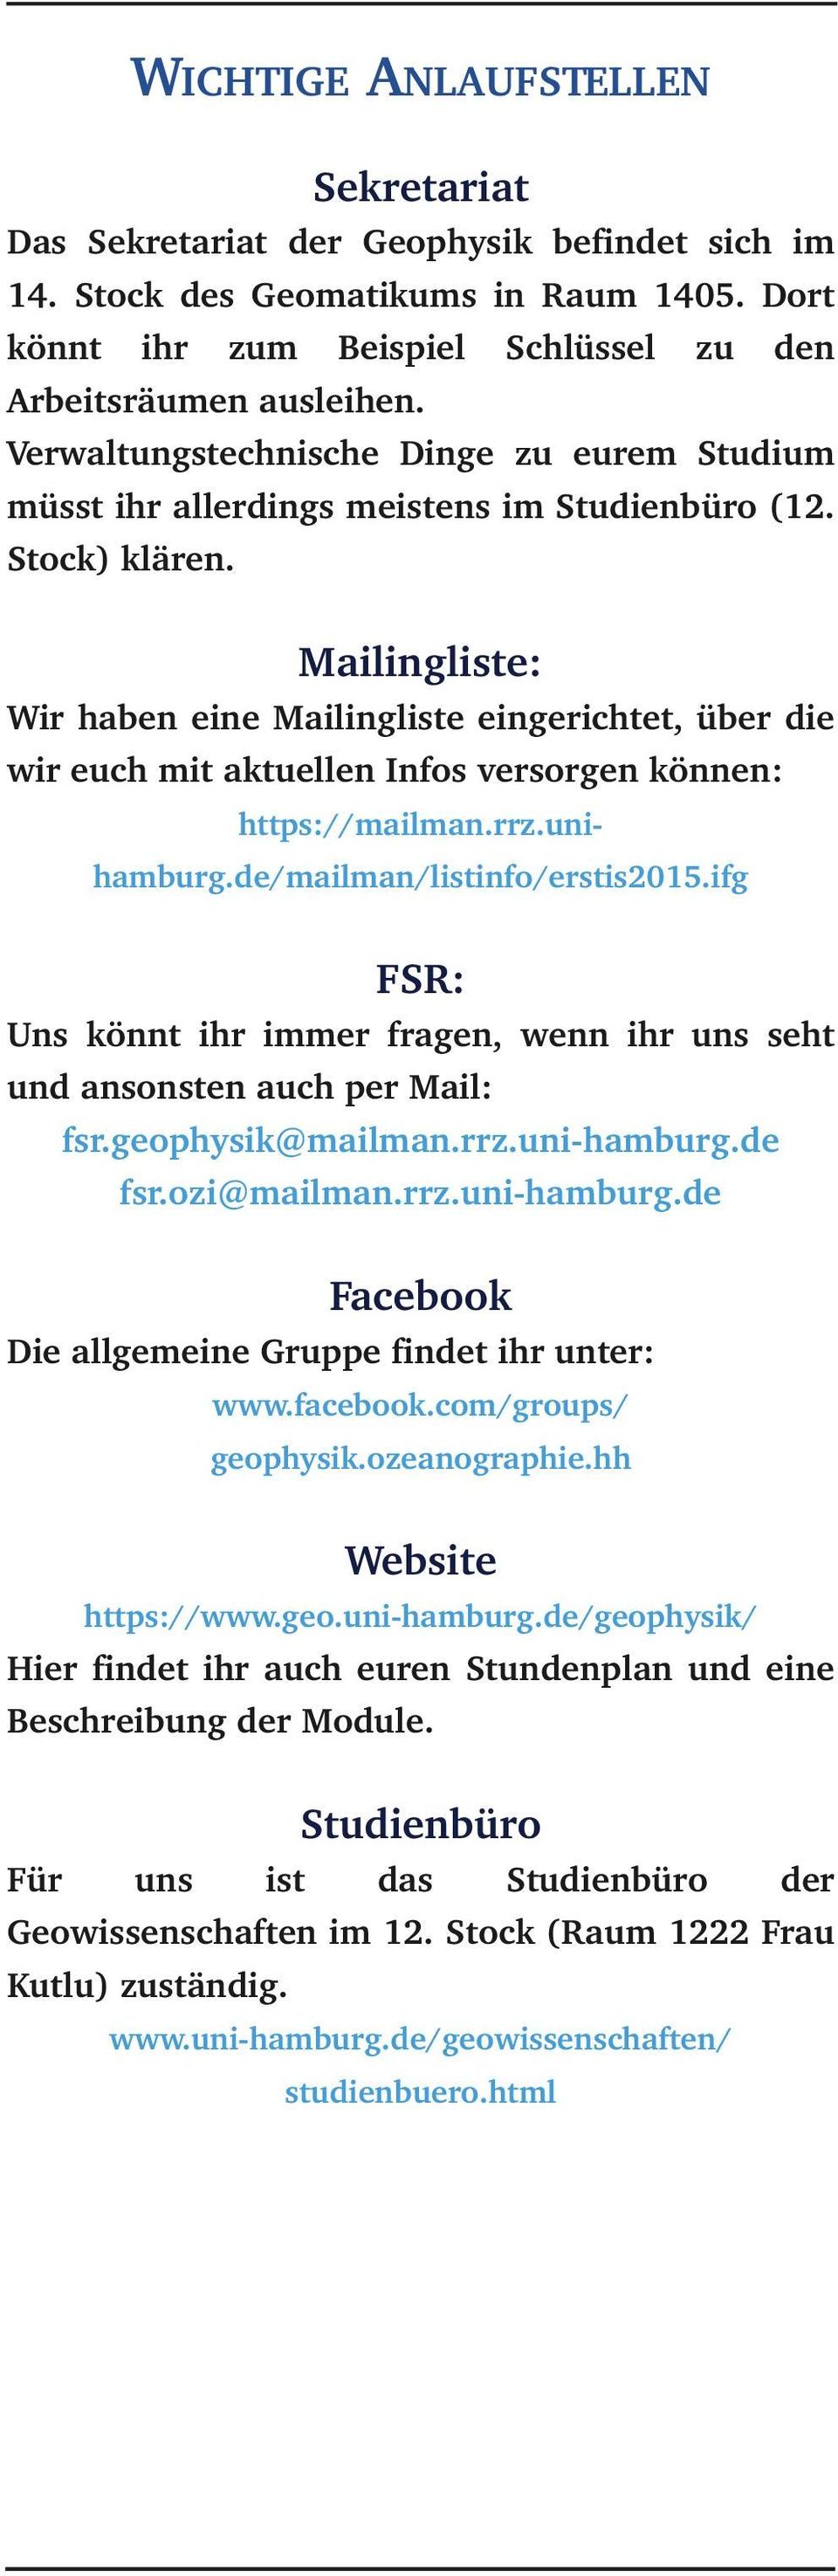 Mailingliste: Wir haben eine Mailingliste eingerichtet, über die wir euch mit aktuellen Infos versorgen können: https://mailman.rrz.unihamburg.de/mailman/listinfo/erstis2015.